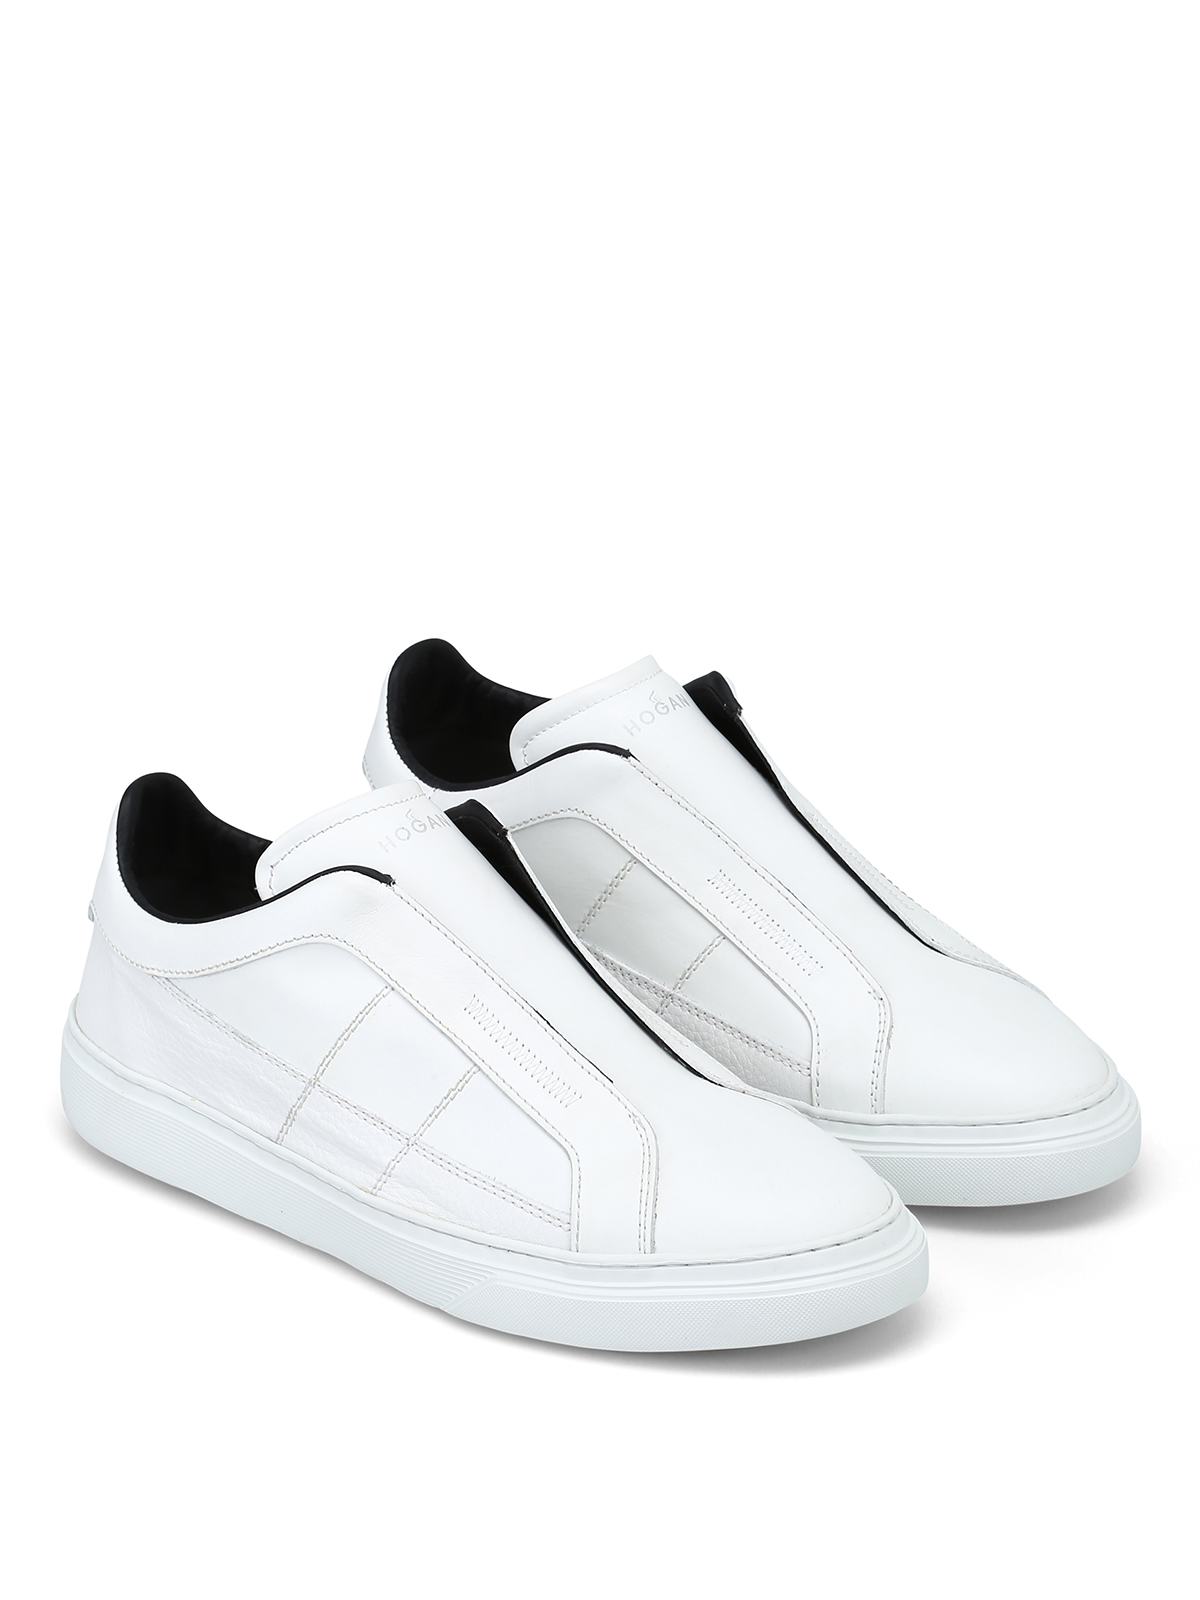 Hogan - Sneaker in pelle senza lacci - sneakers - HXM3650AX00IJY351F